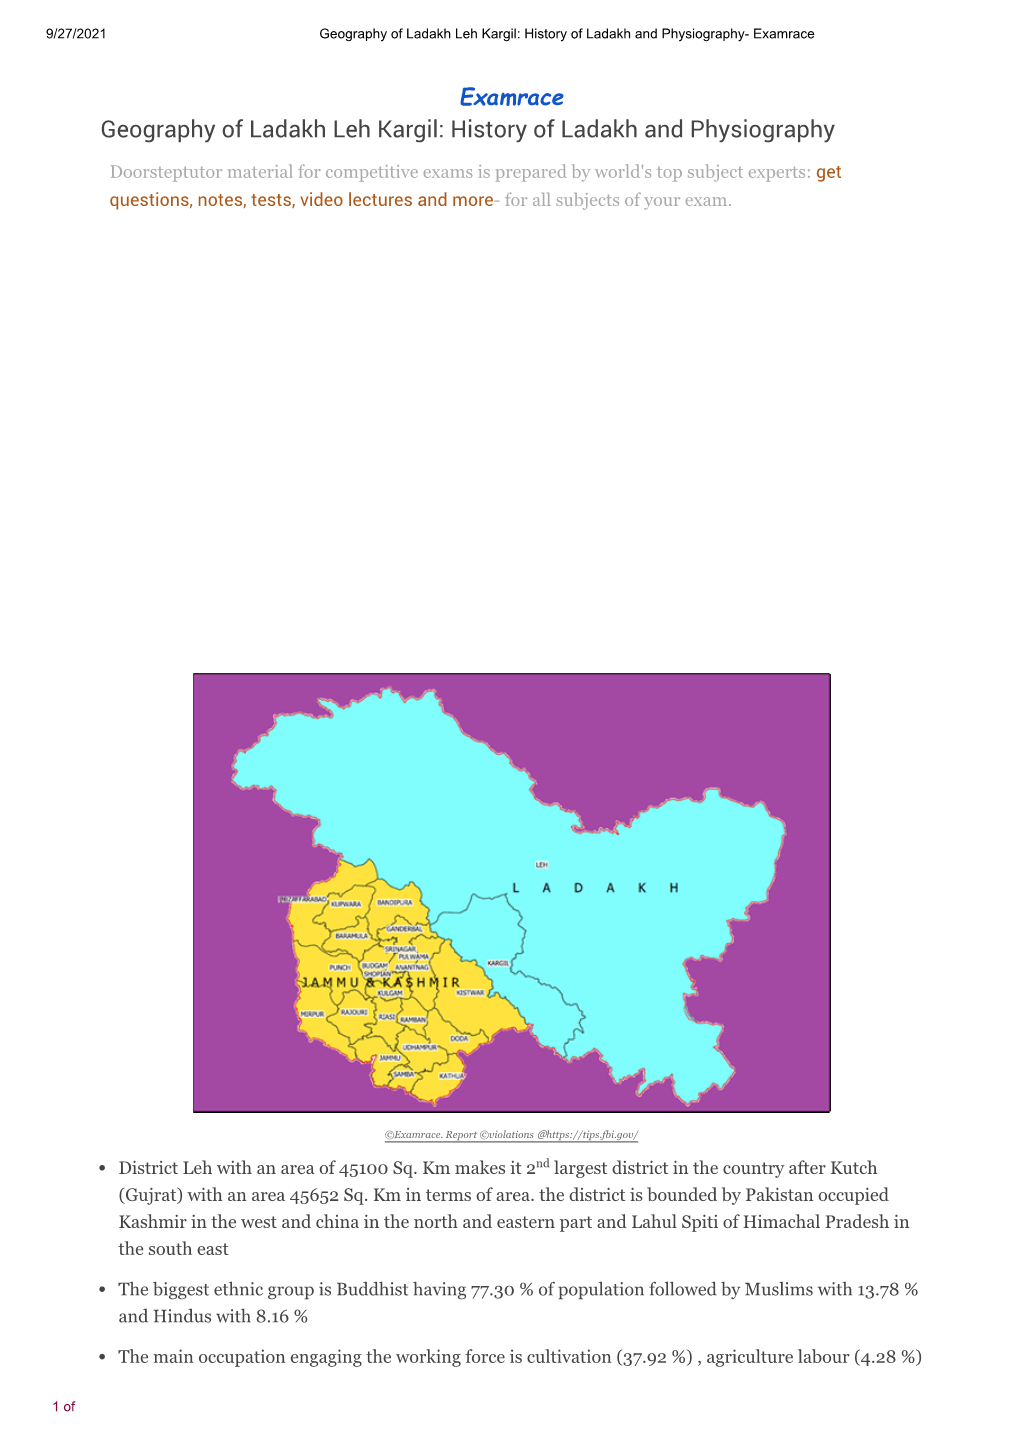 Geography of Ladakh Leh Kargil: History of Ladakh and Physiography- Examrace